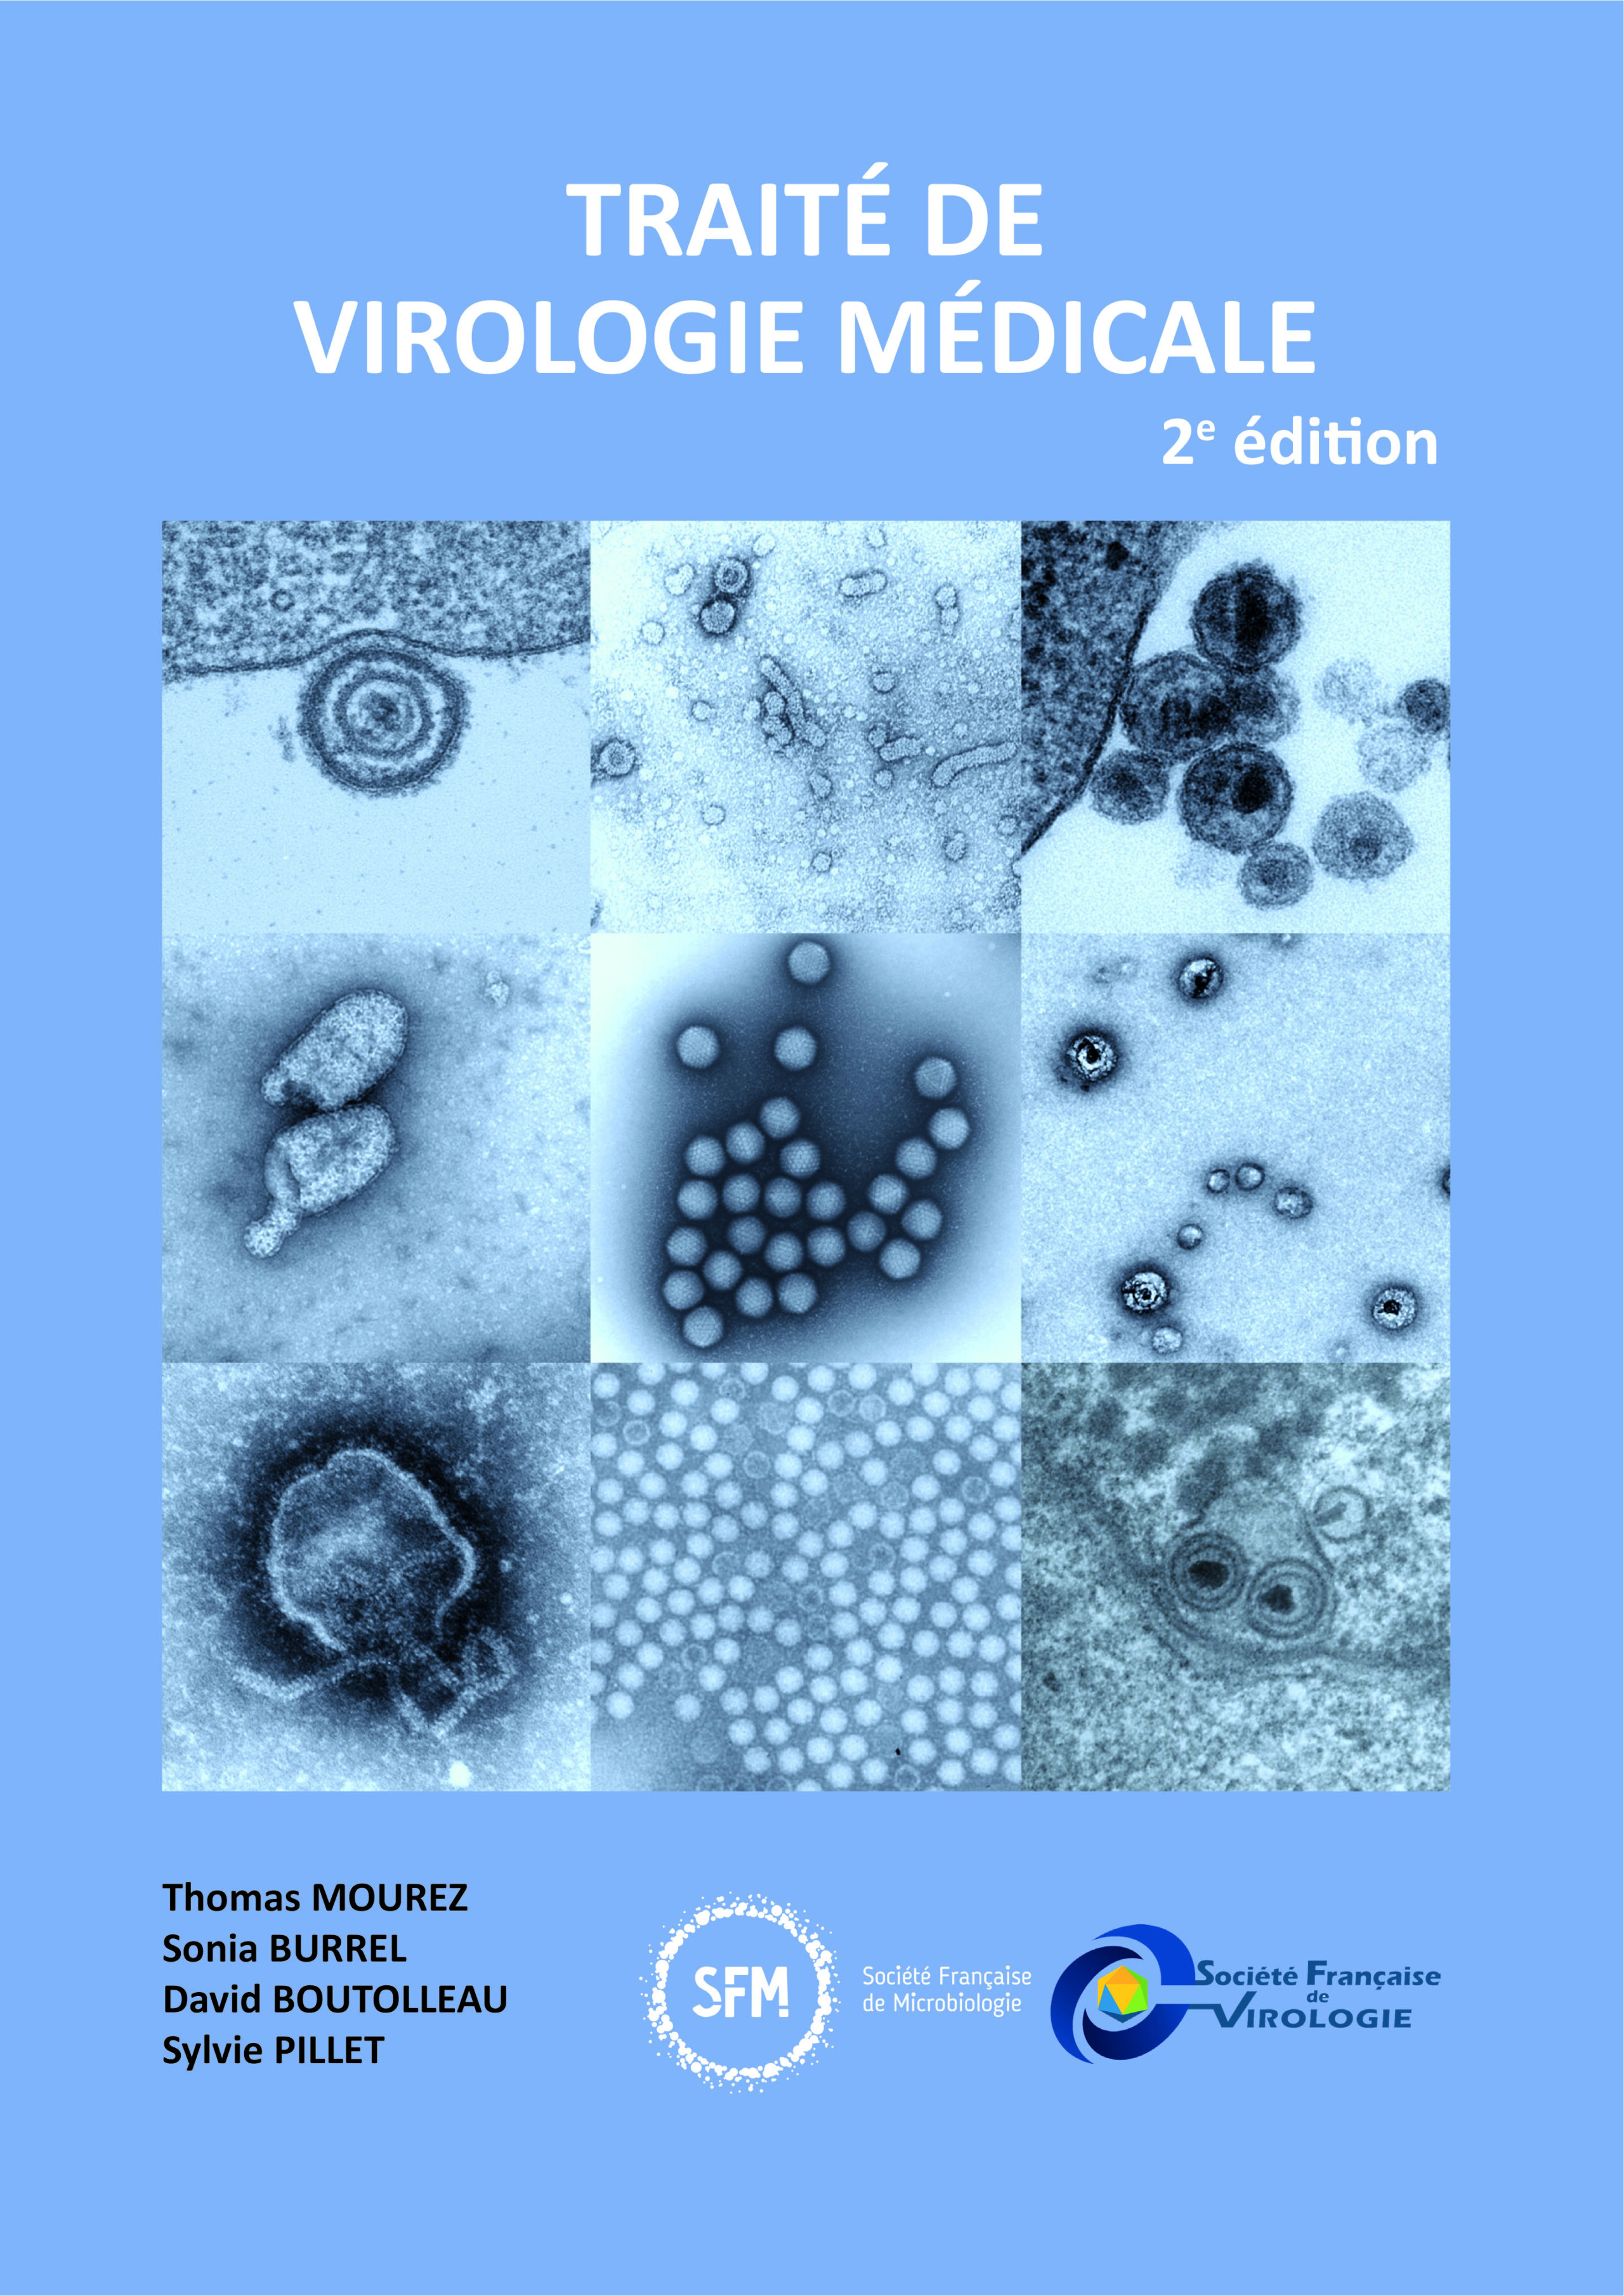 medicale - Traité de virologie médicale - Page 3 TVM2019_COUVERTURE